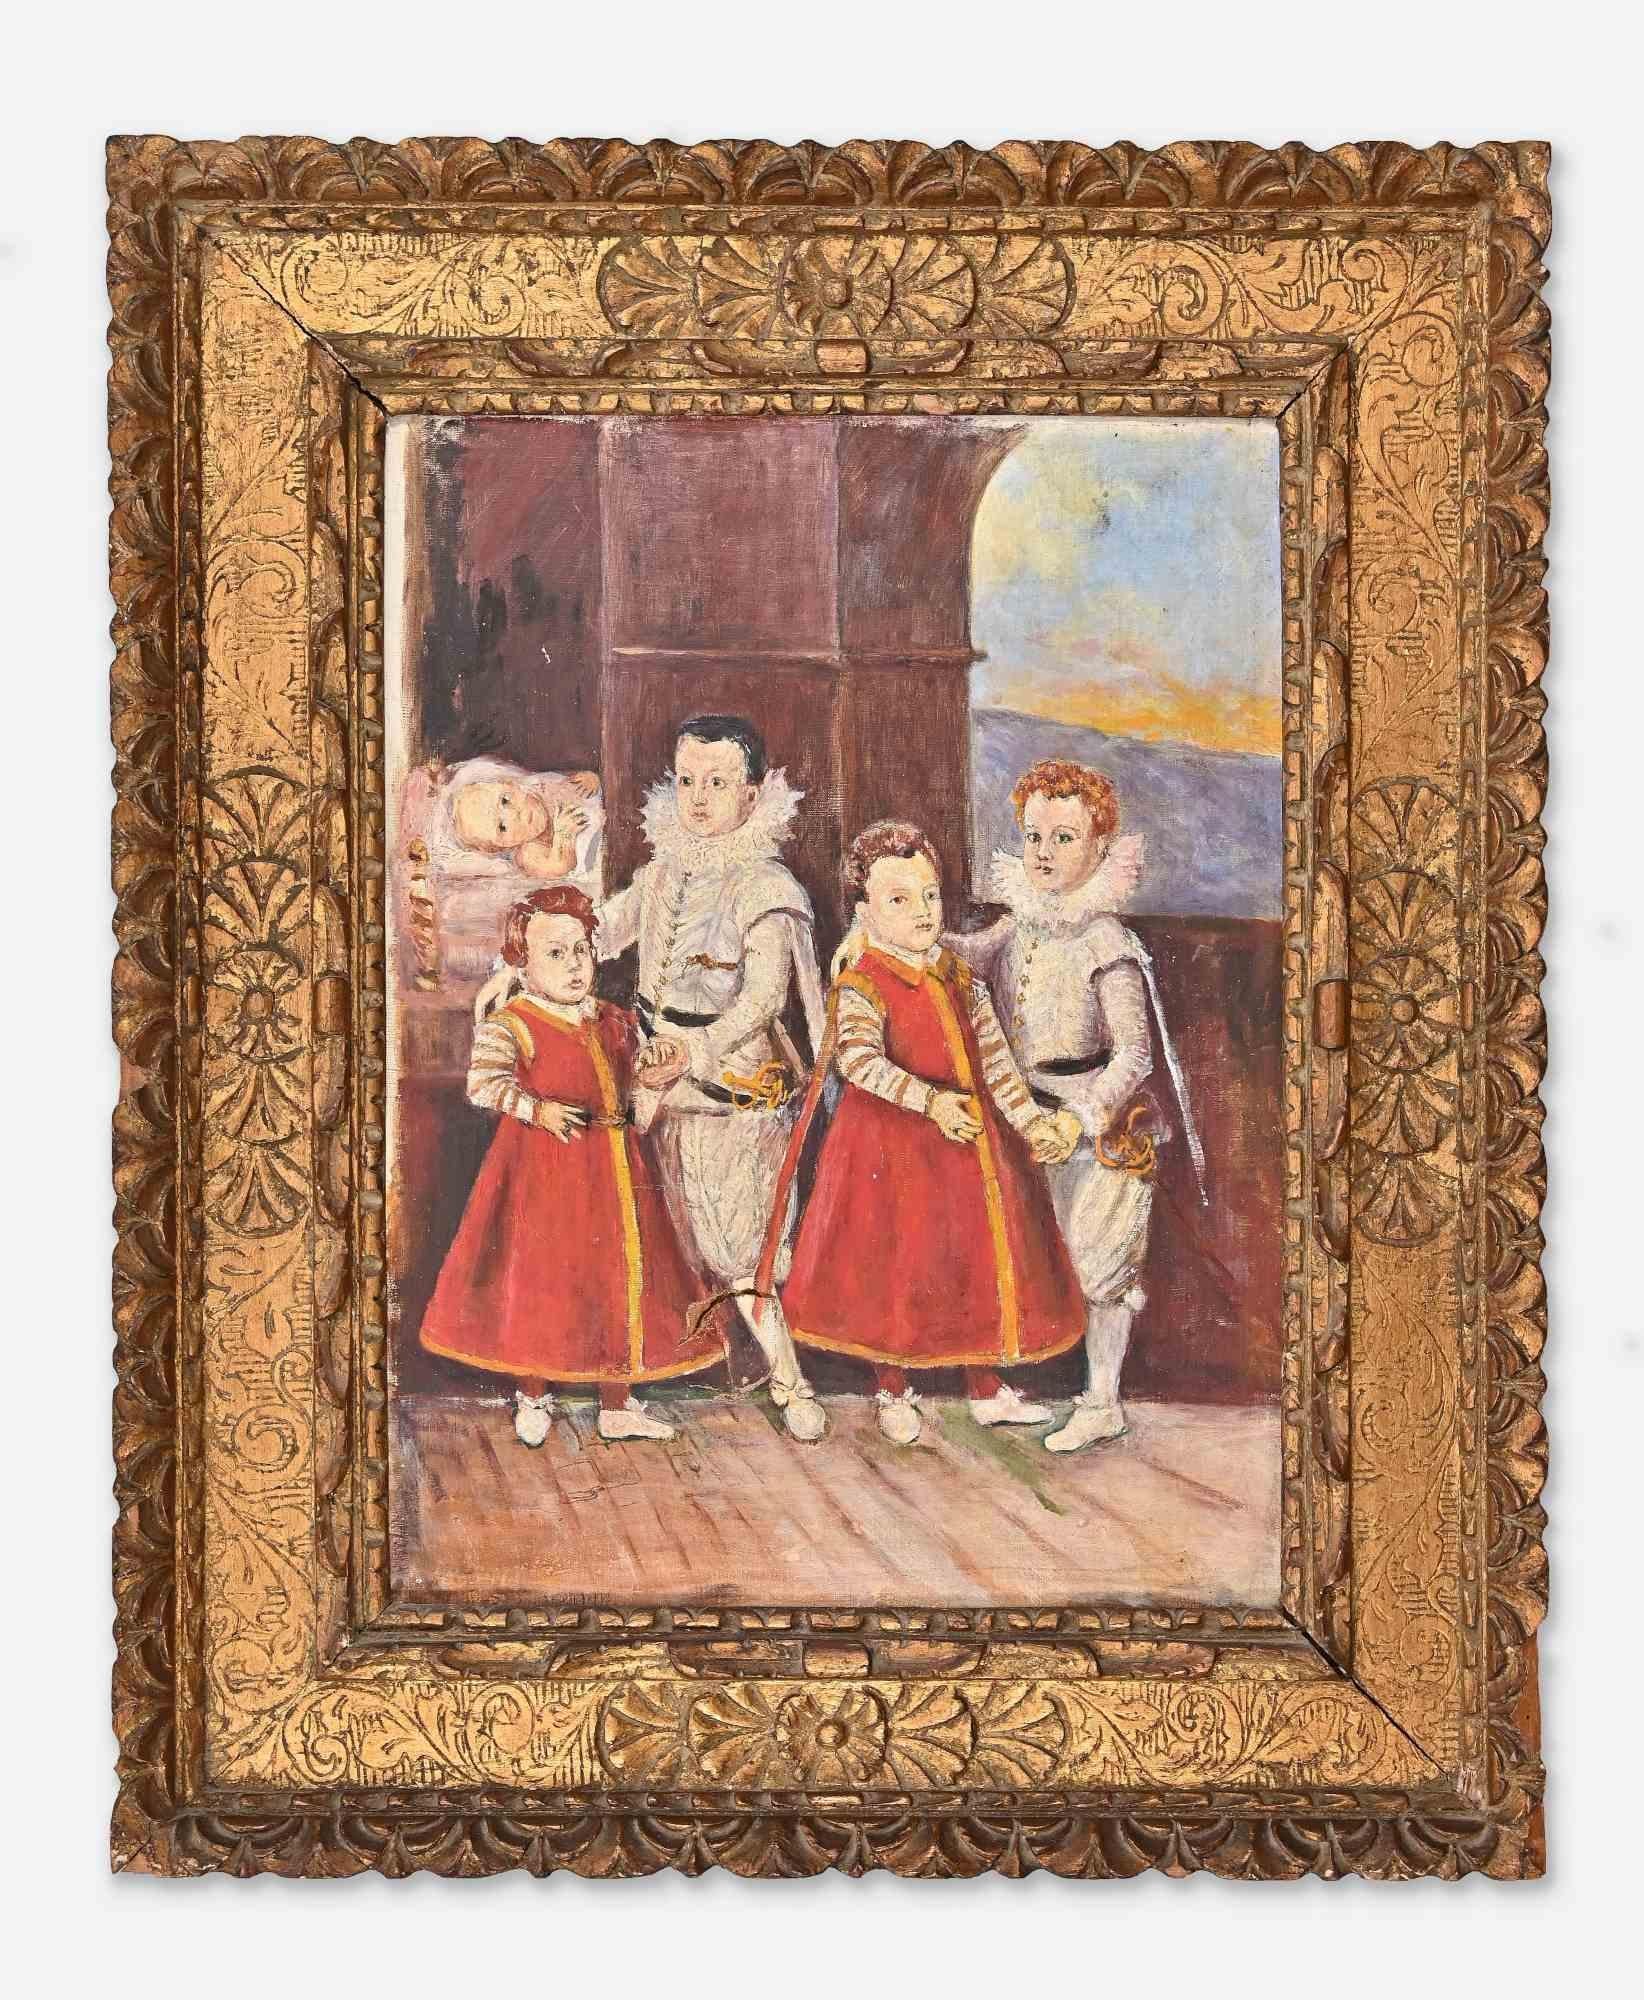 Portrait Painting Unknown - Intérieur avec cinq enfants - Peinture à l'huile sur toile - 19ème siècle